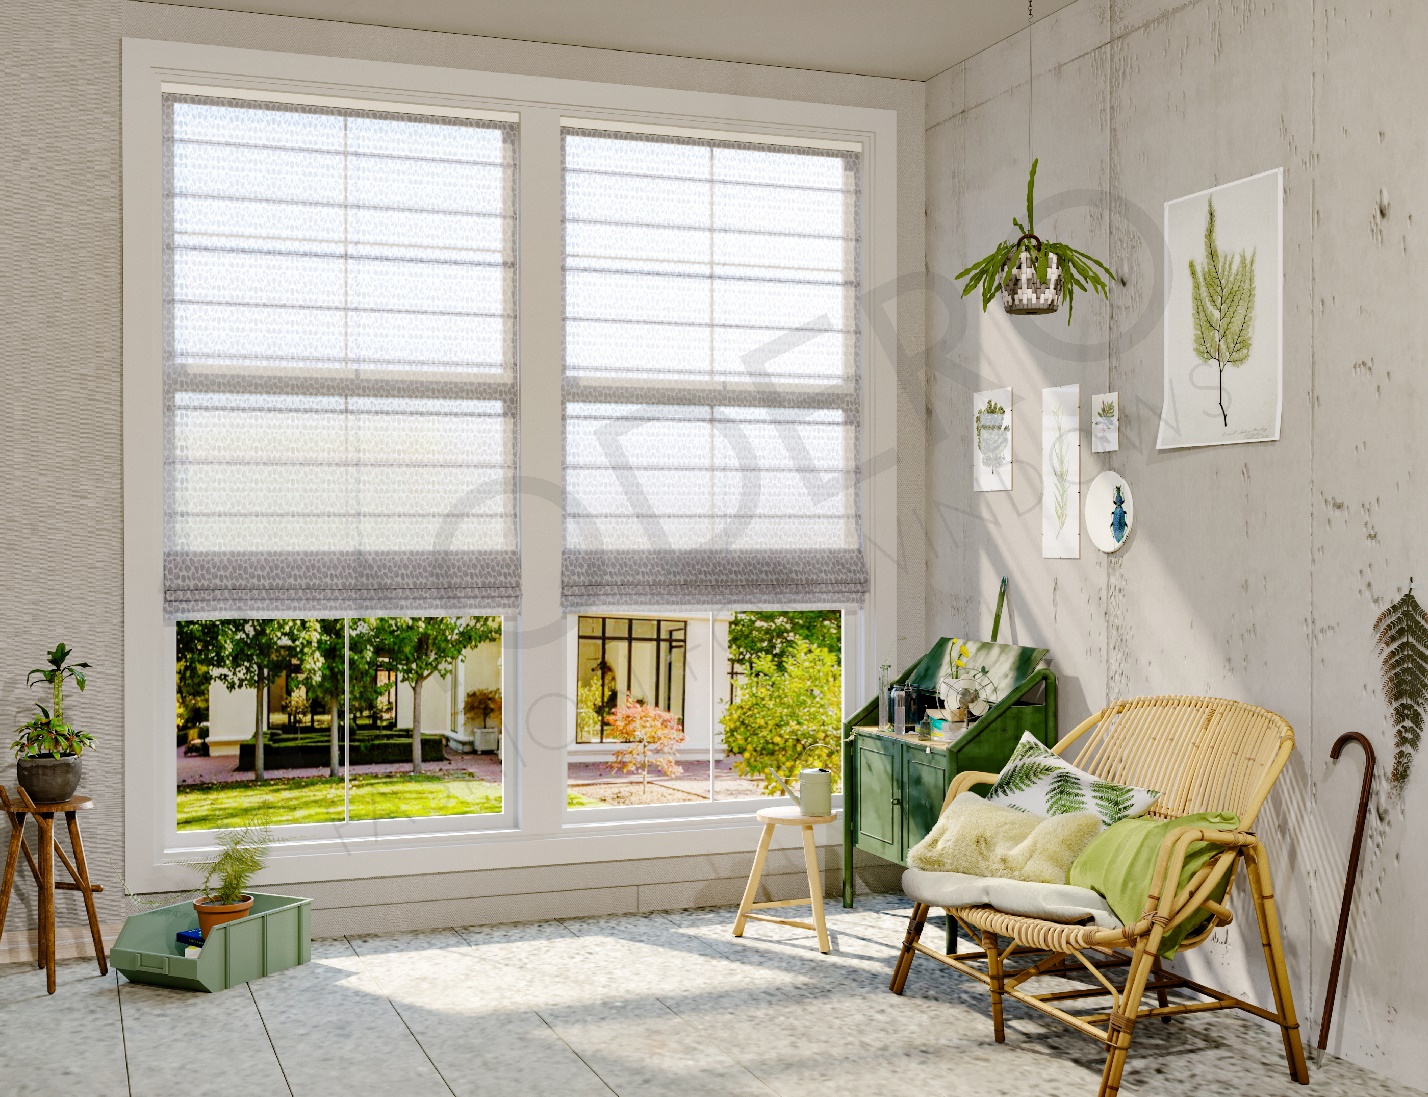 Lựa chọn rèm cửa hợp lý sẽ tạo nên vẻ đẹp toàn diện cho không gian nhà của bạn